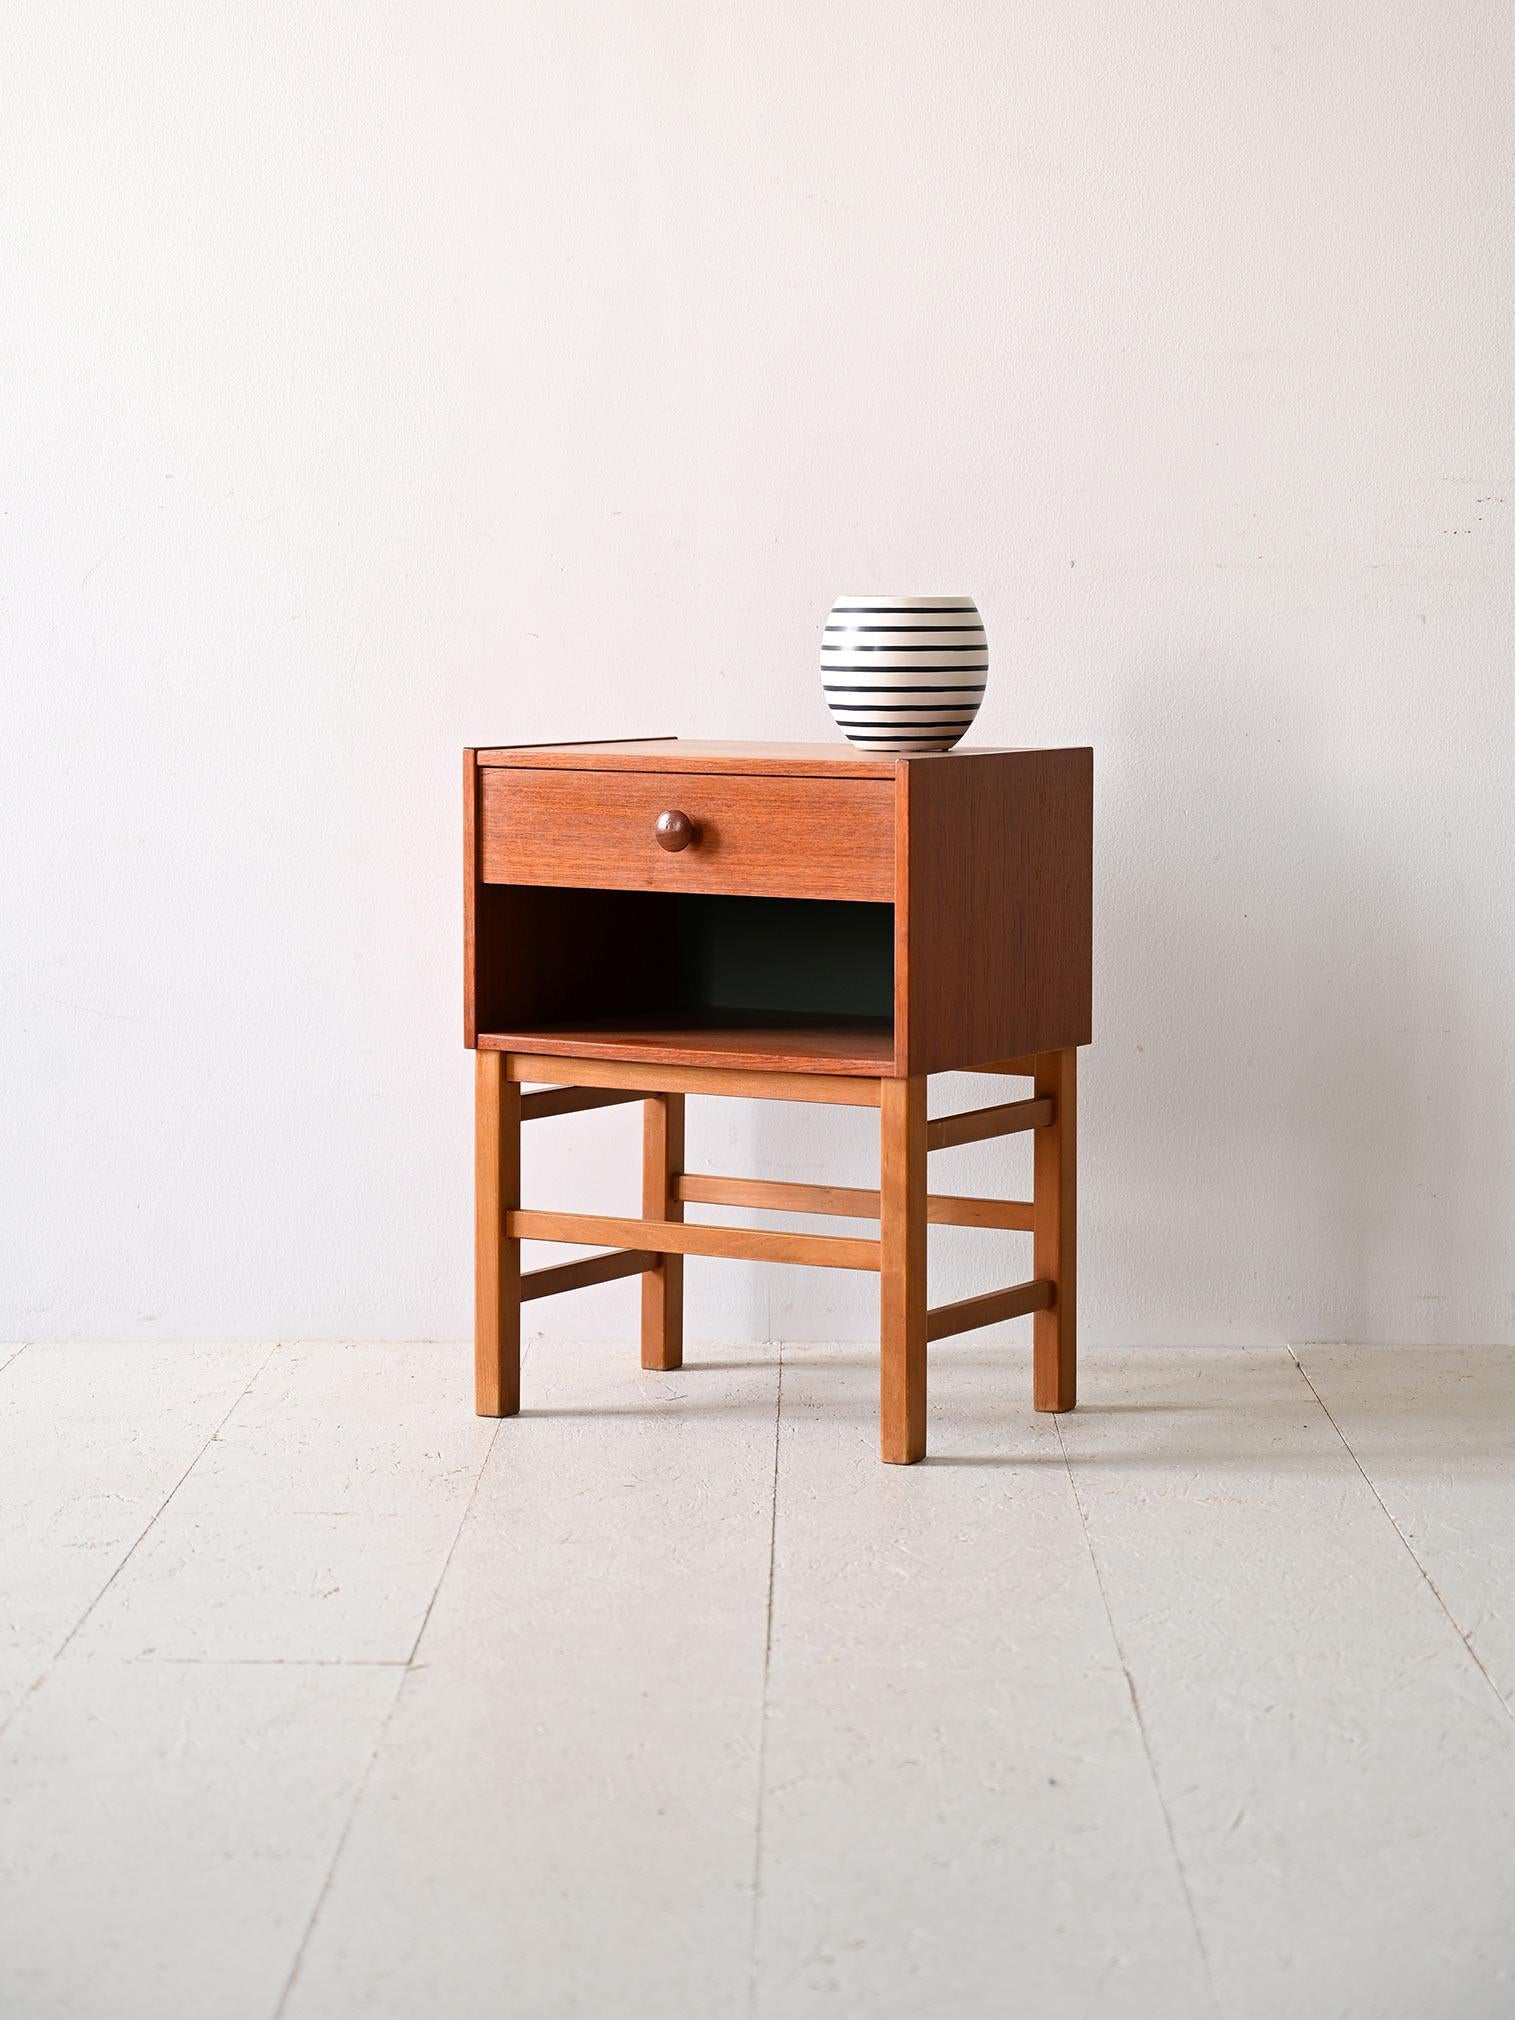 Schwedischer Nachttisch aus den 1960er Jahren mit Schublade.

Dieser kompakte Nachttisch besticht nicht nur durch seine minimalistische Form, sondern bietet mit seiner großen Ablagefläche auch maximale Funktionalität. Die Schublade aus Teakholz